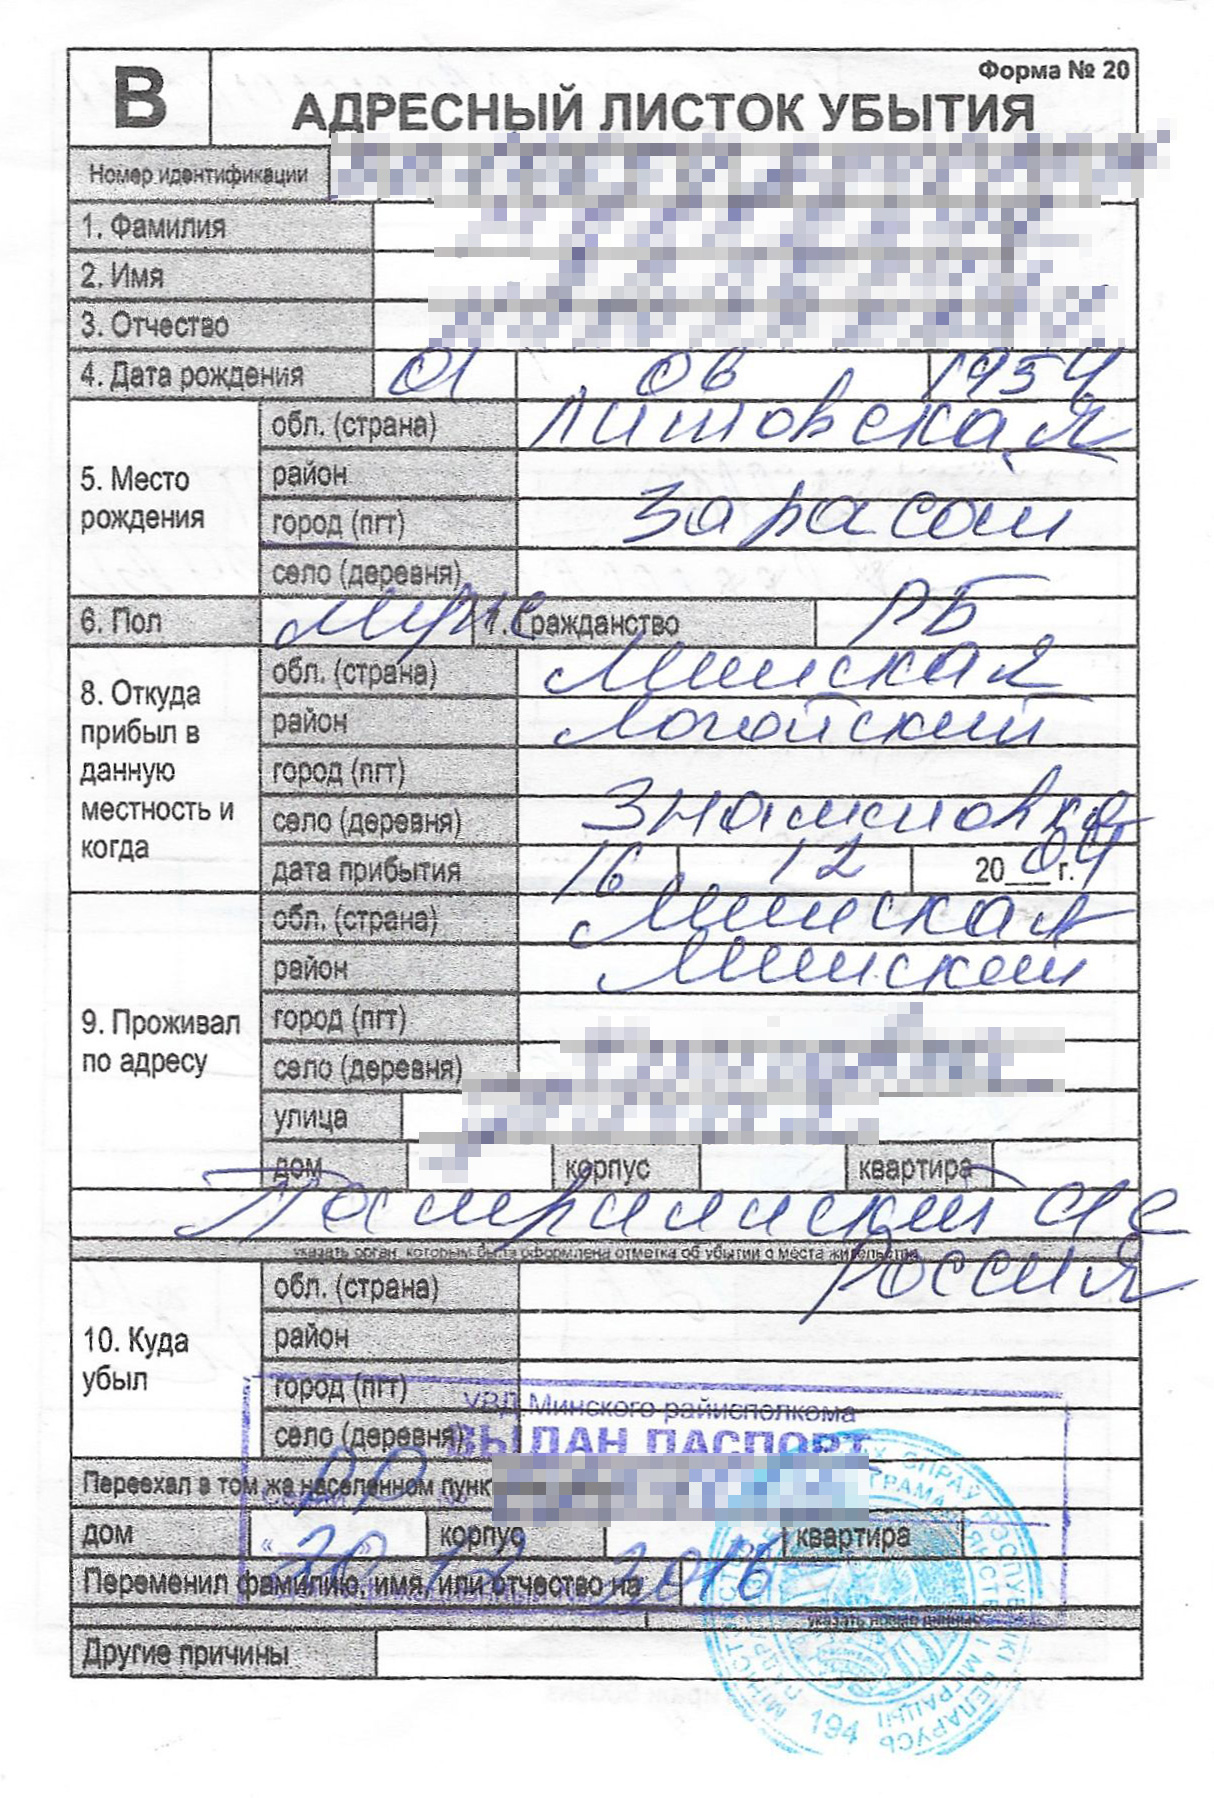 Так выглядит листок убытия в Беларуси, его выдают при выписке с места постоянной регистрации